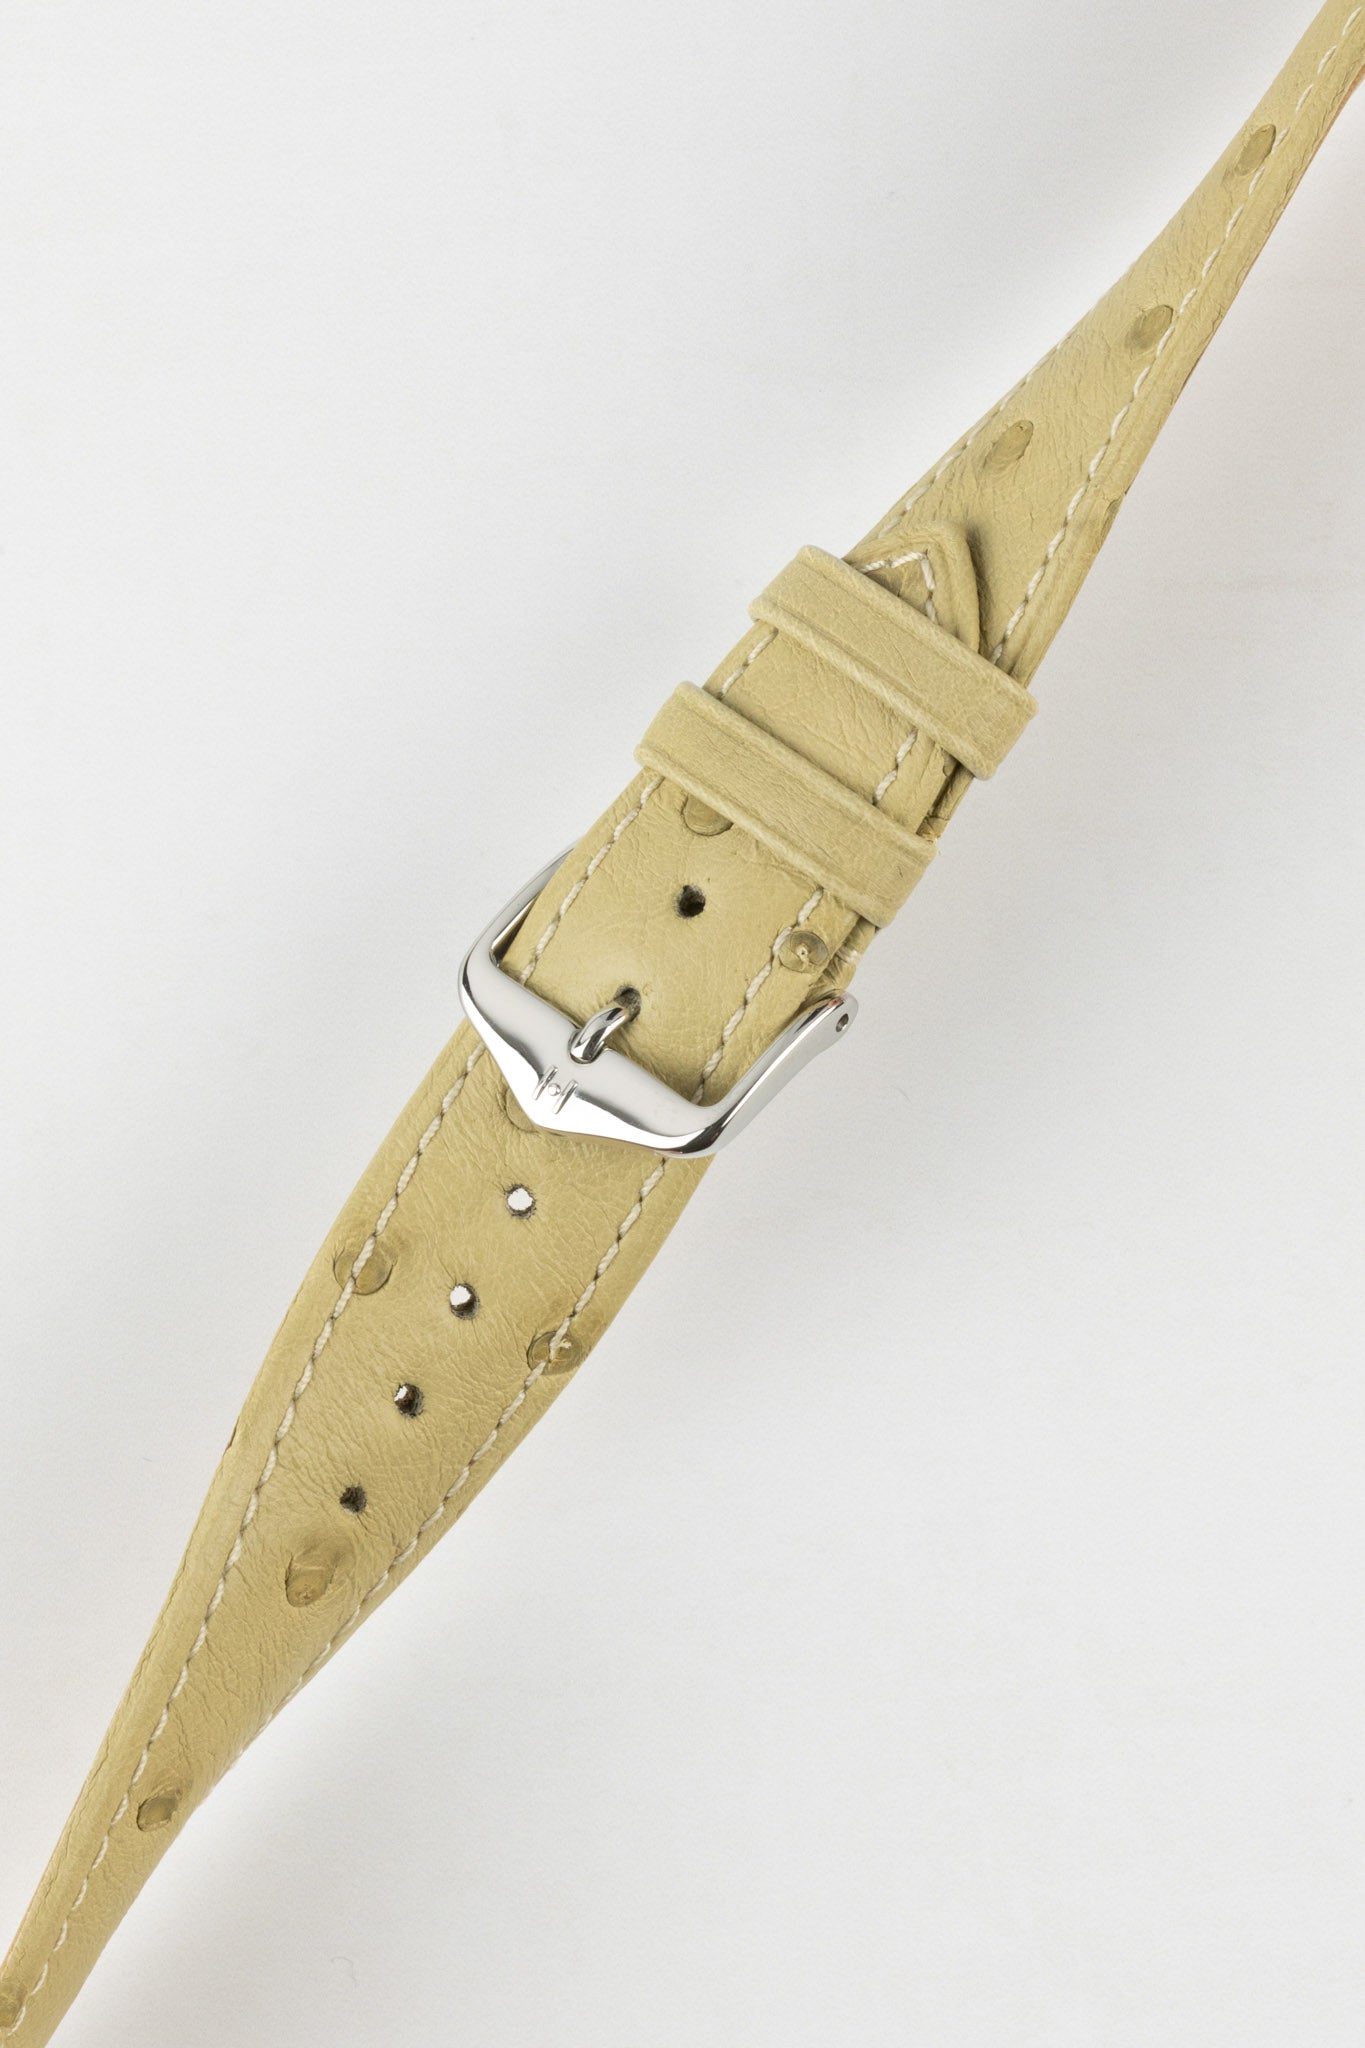 Hirsch MASSAI OSTRICH Leather Watch Strap in ROYAL BLUE